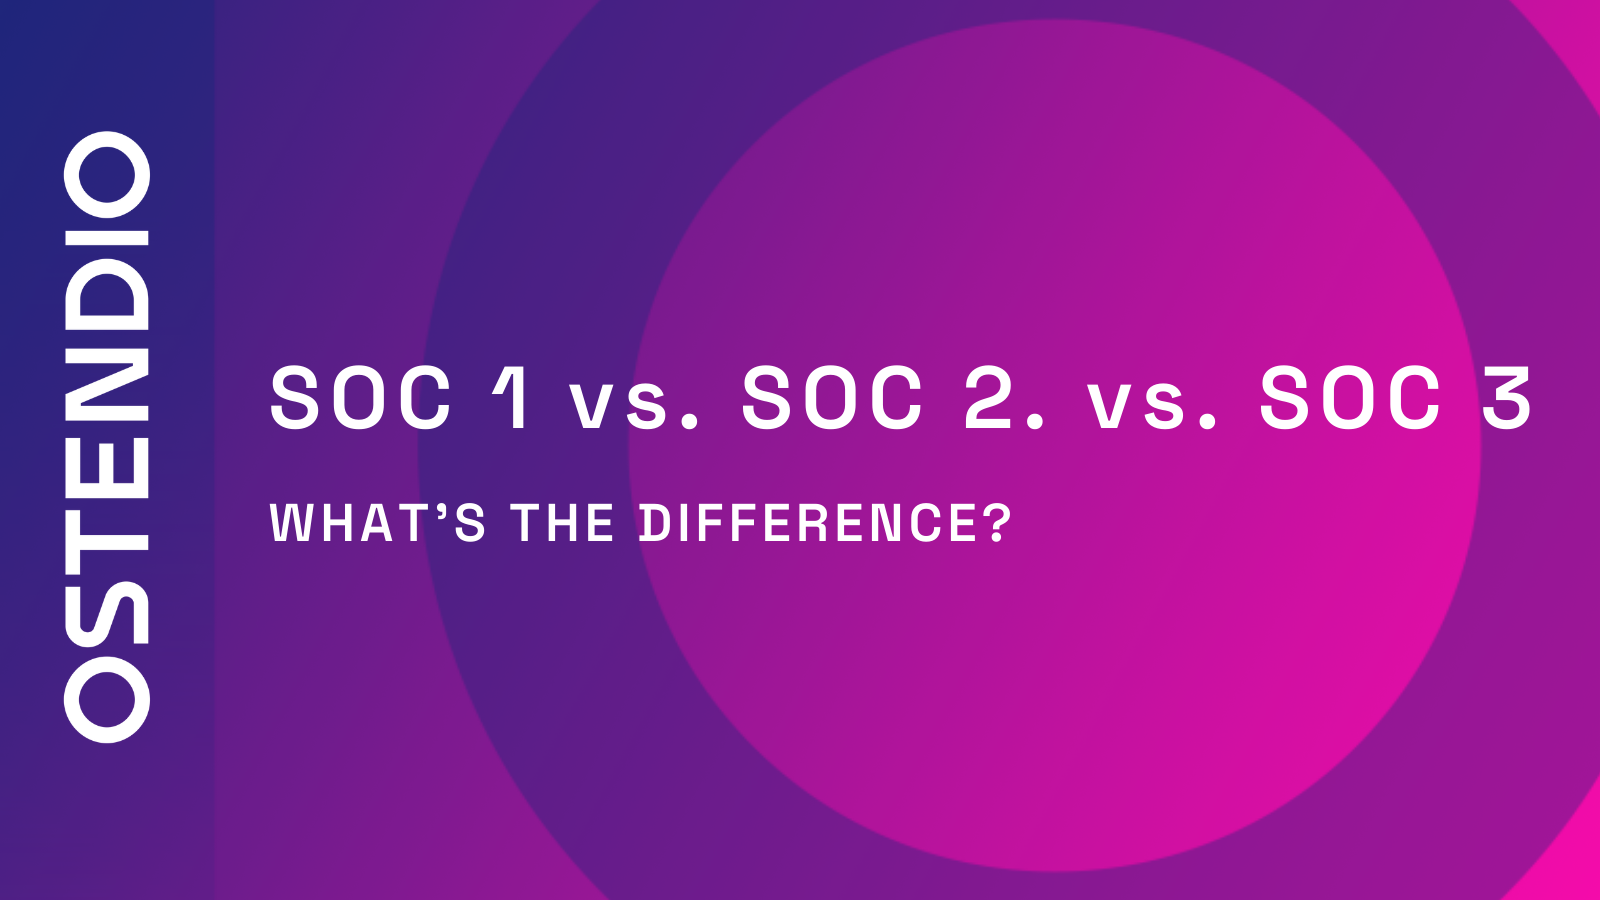 SOC 1 vs. SOC 2 vs. SOC 3